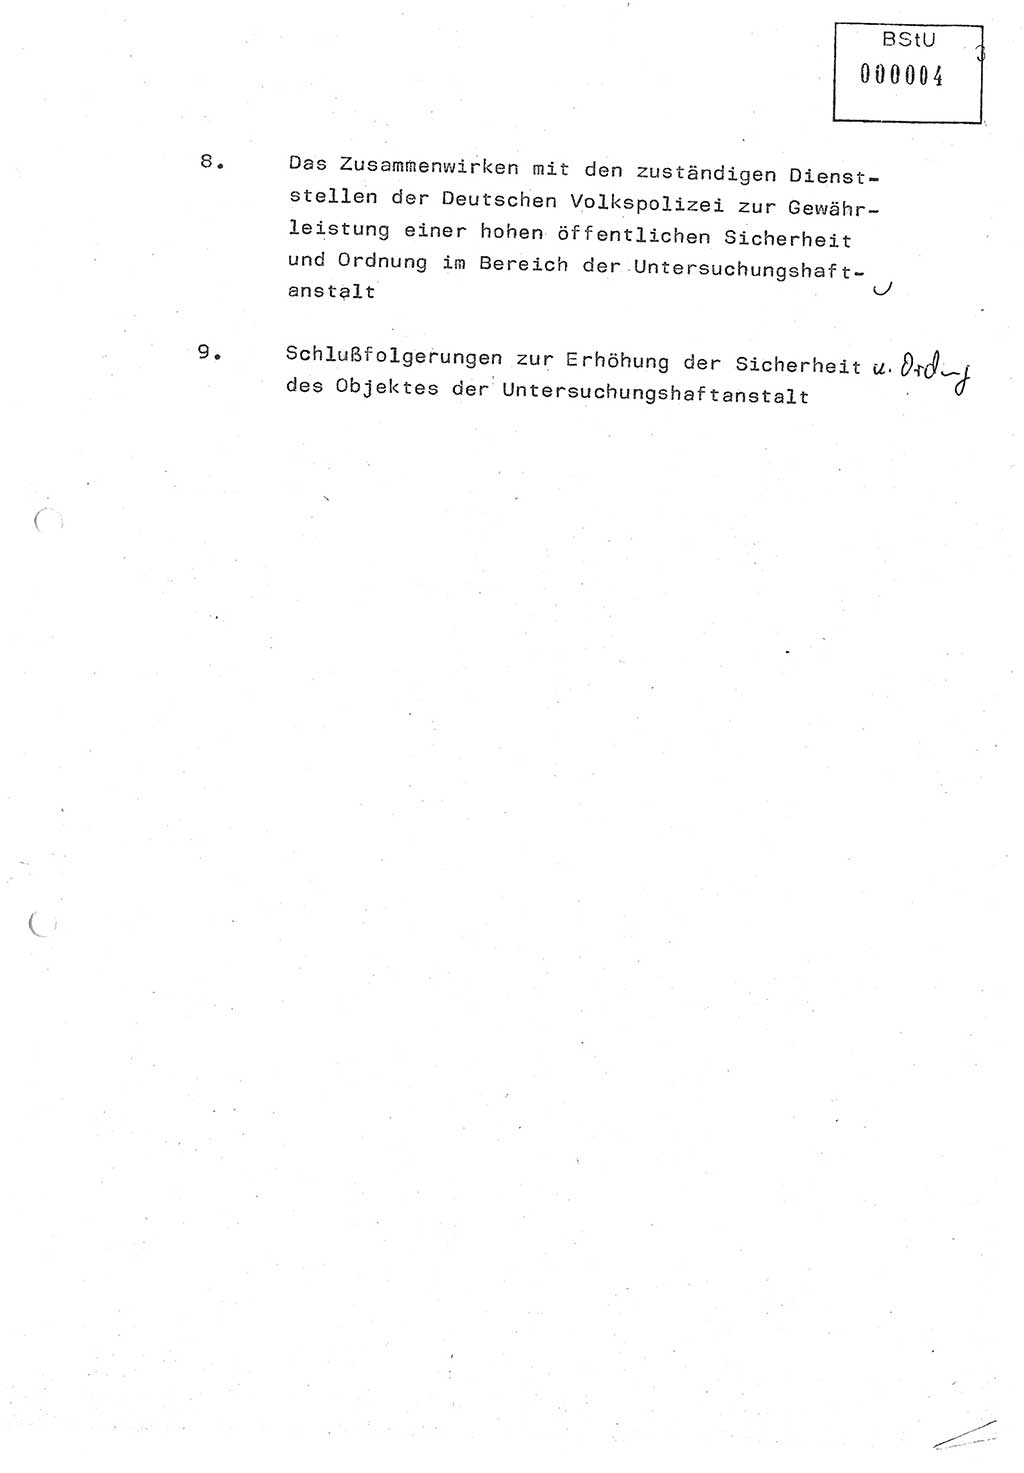 Diplomarbeit (Entwurf) Oberleutnant Peter Parke (Abt. ⅩⅣ), Ministerium für Staatssicherheit (MfS) [Deutsche Demokratische Republik (DDR)], Juristische Hochschule (JHS), Geheime Verschlußsache (GVS) o001-98/86, Potsdam 1986, Seite 4 (Dipl.-Arb. MfS DDR JHS GVS o001-98/86 1986, S. 4)